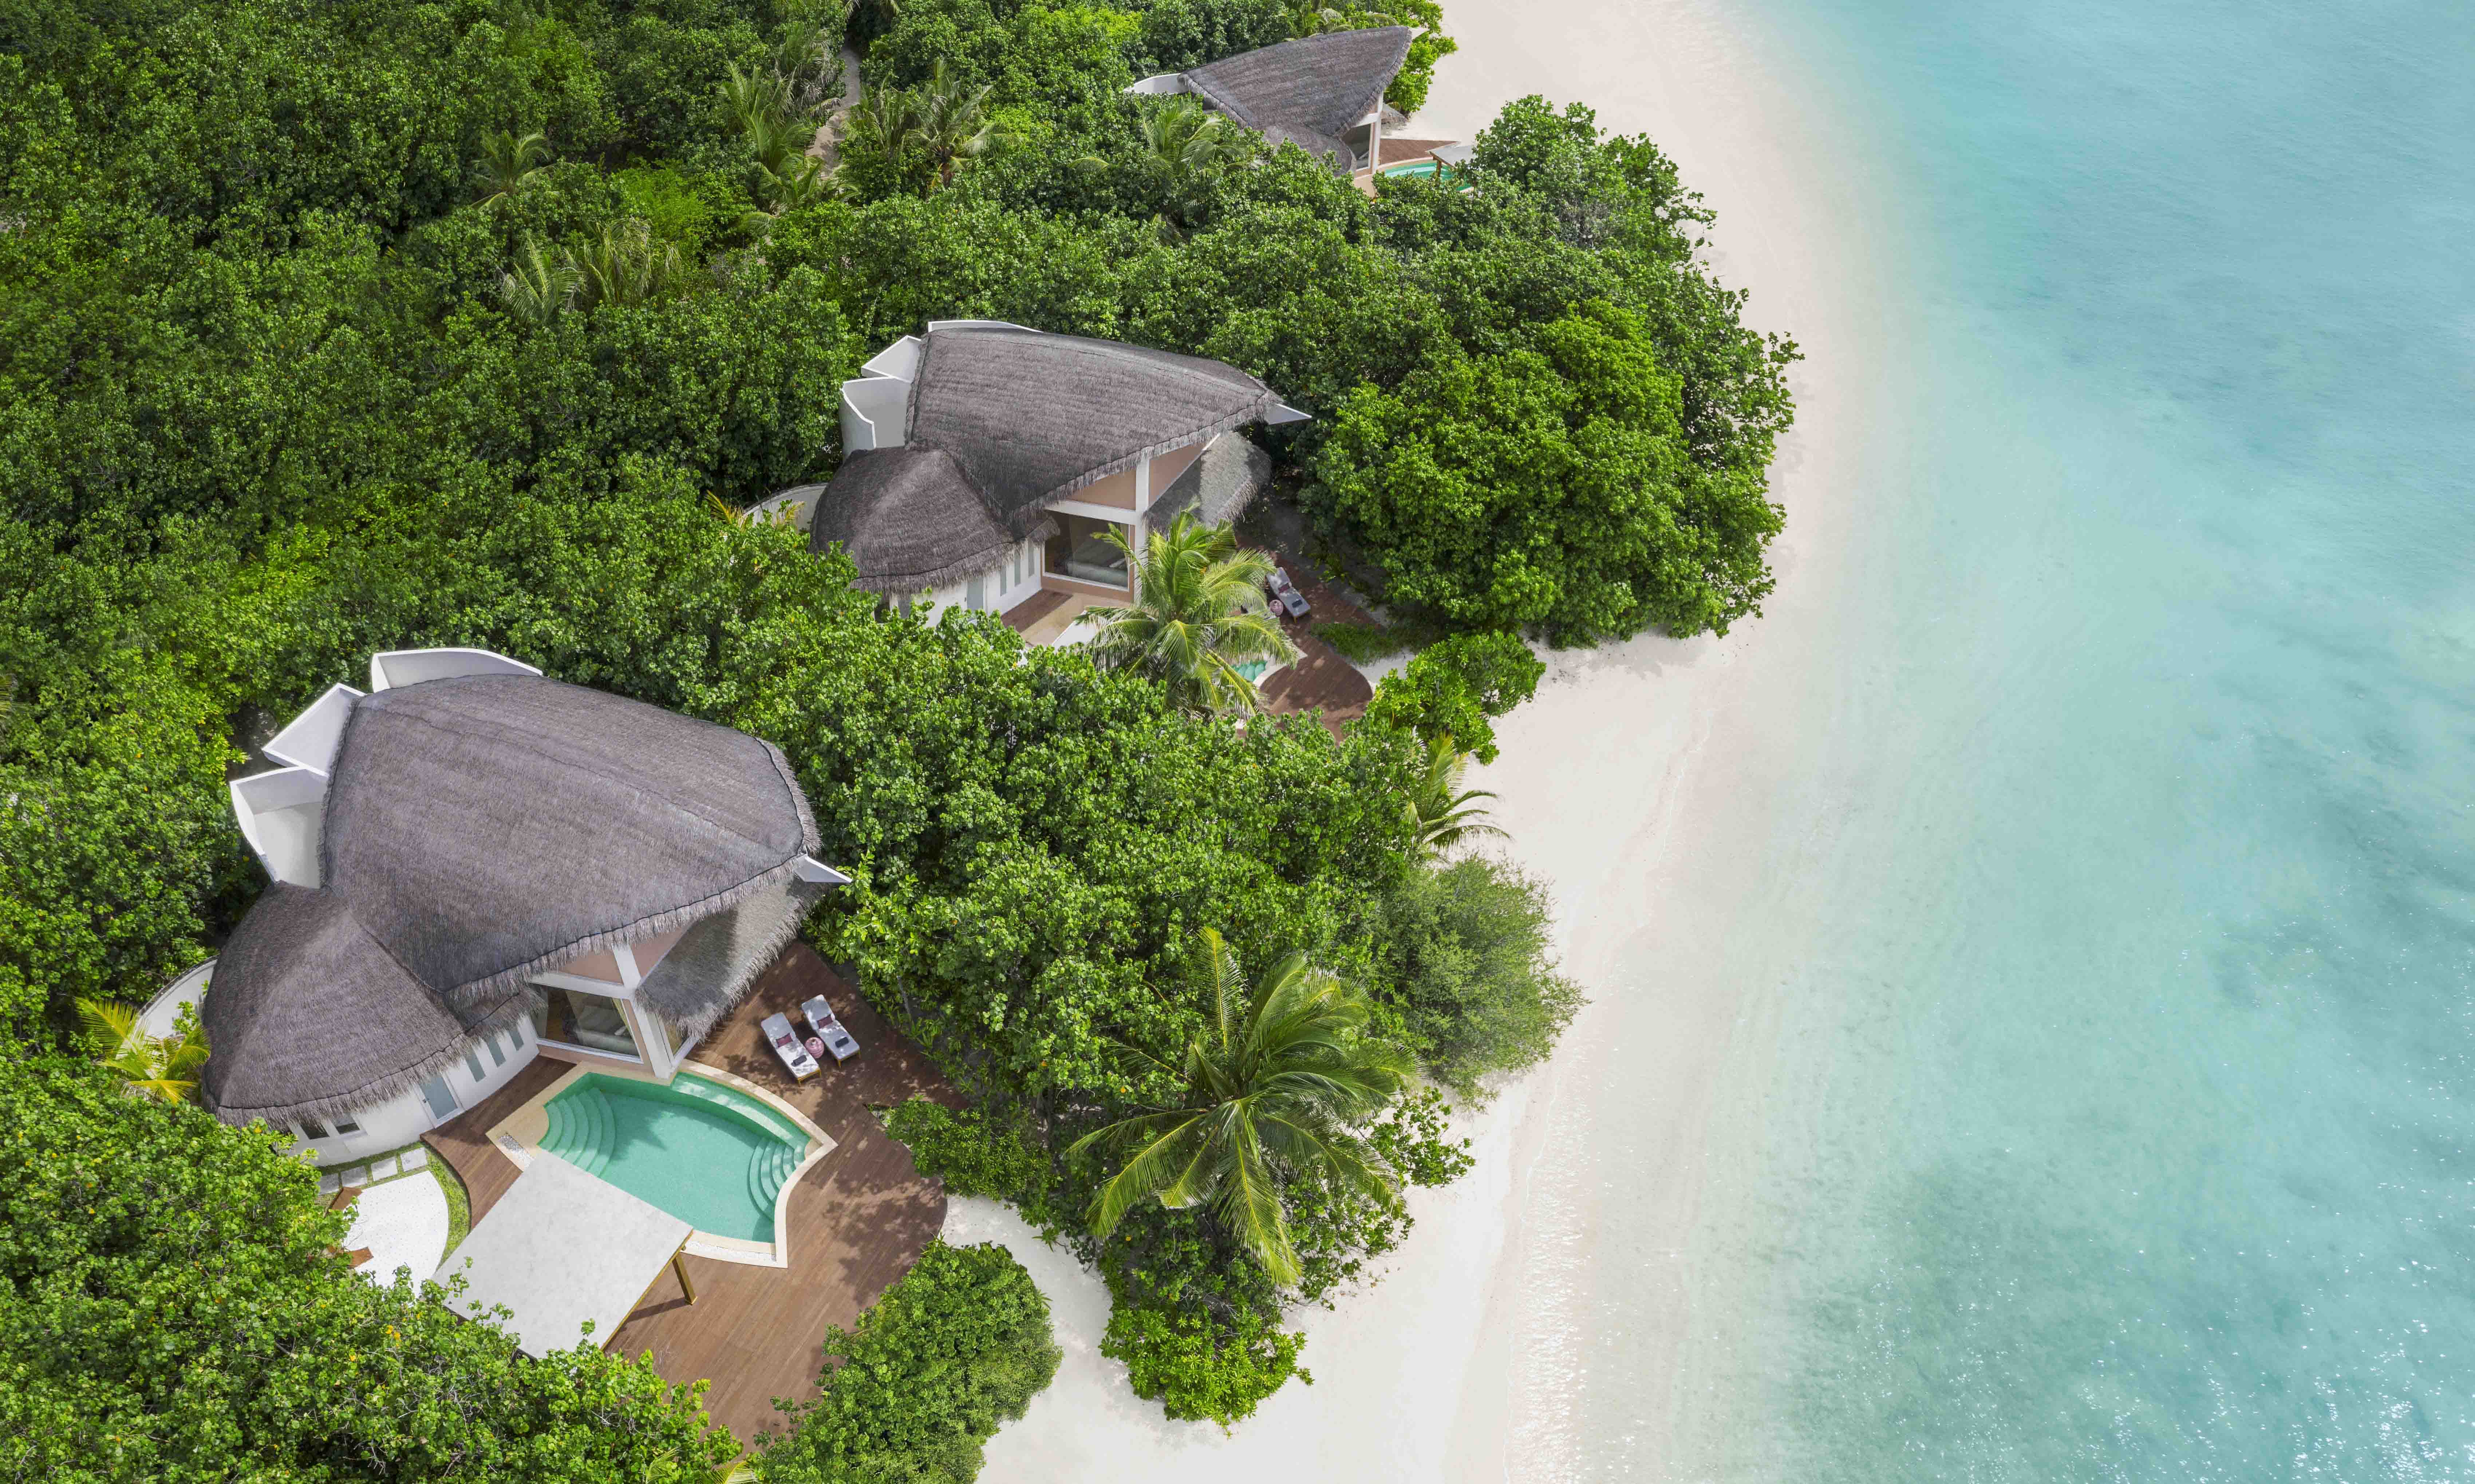 JW Marriott Maldives Resort  Spa